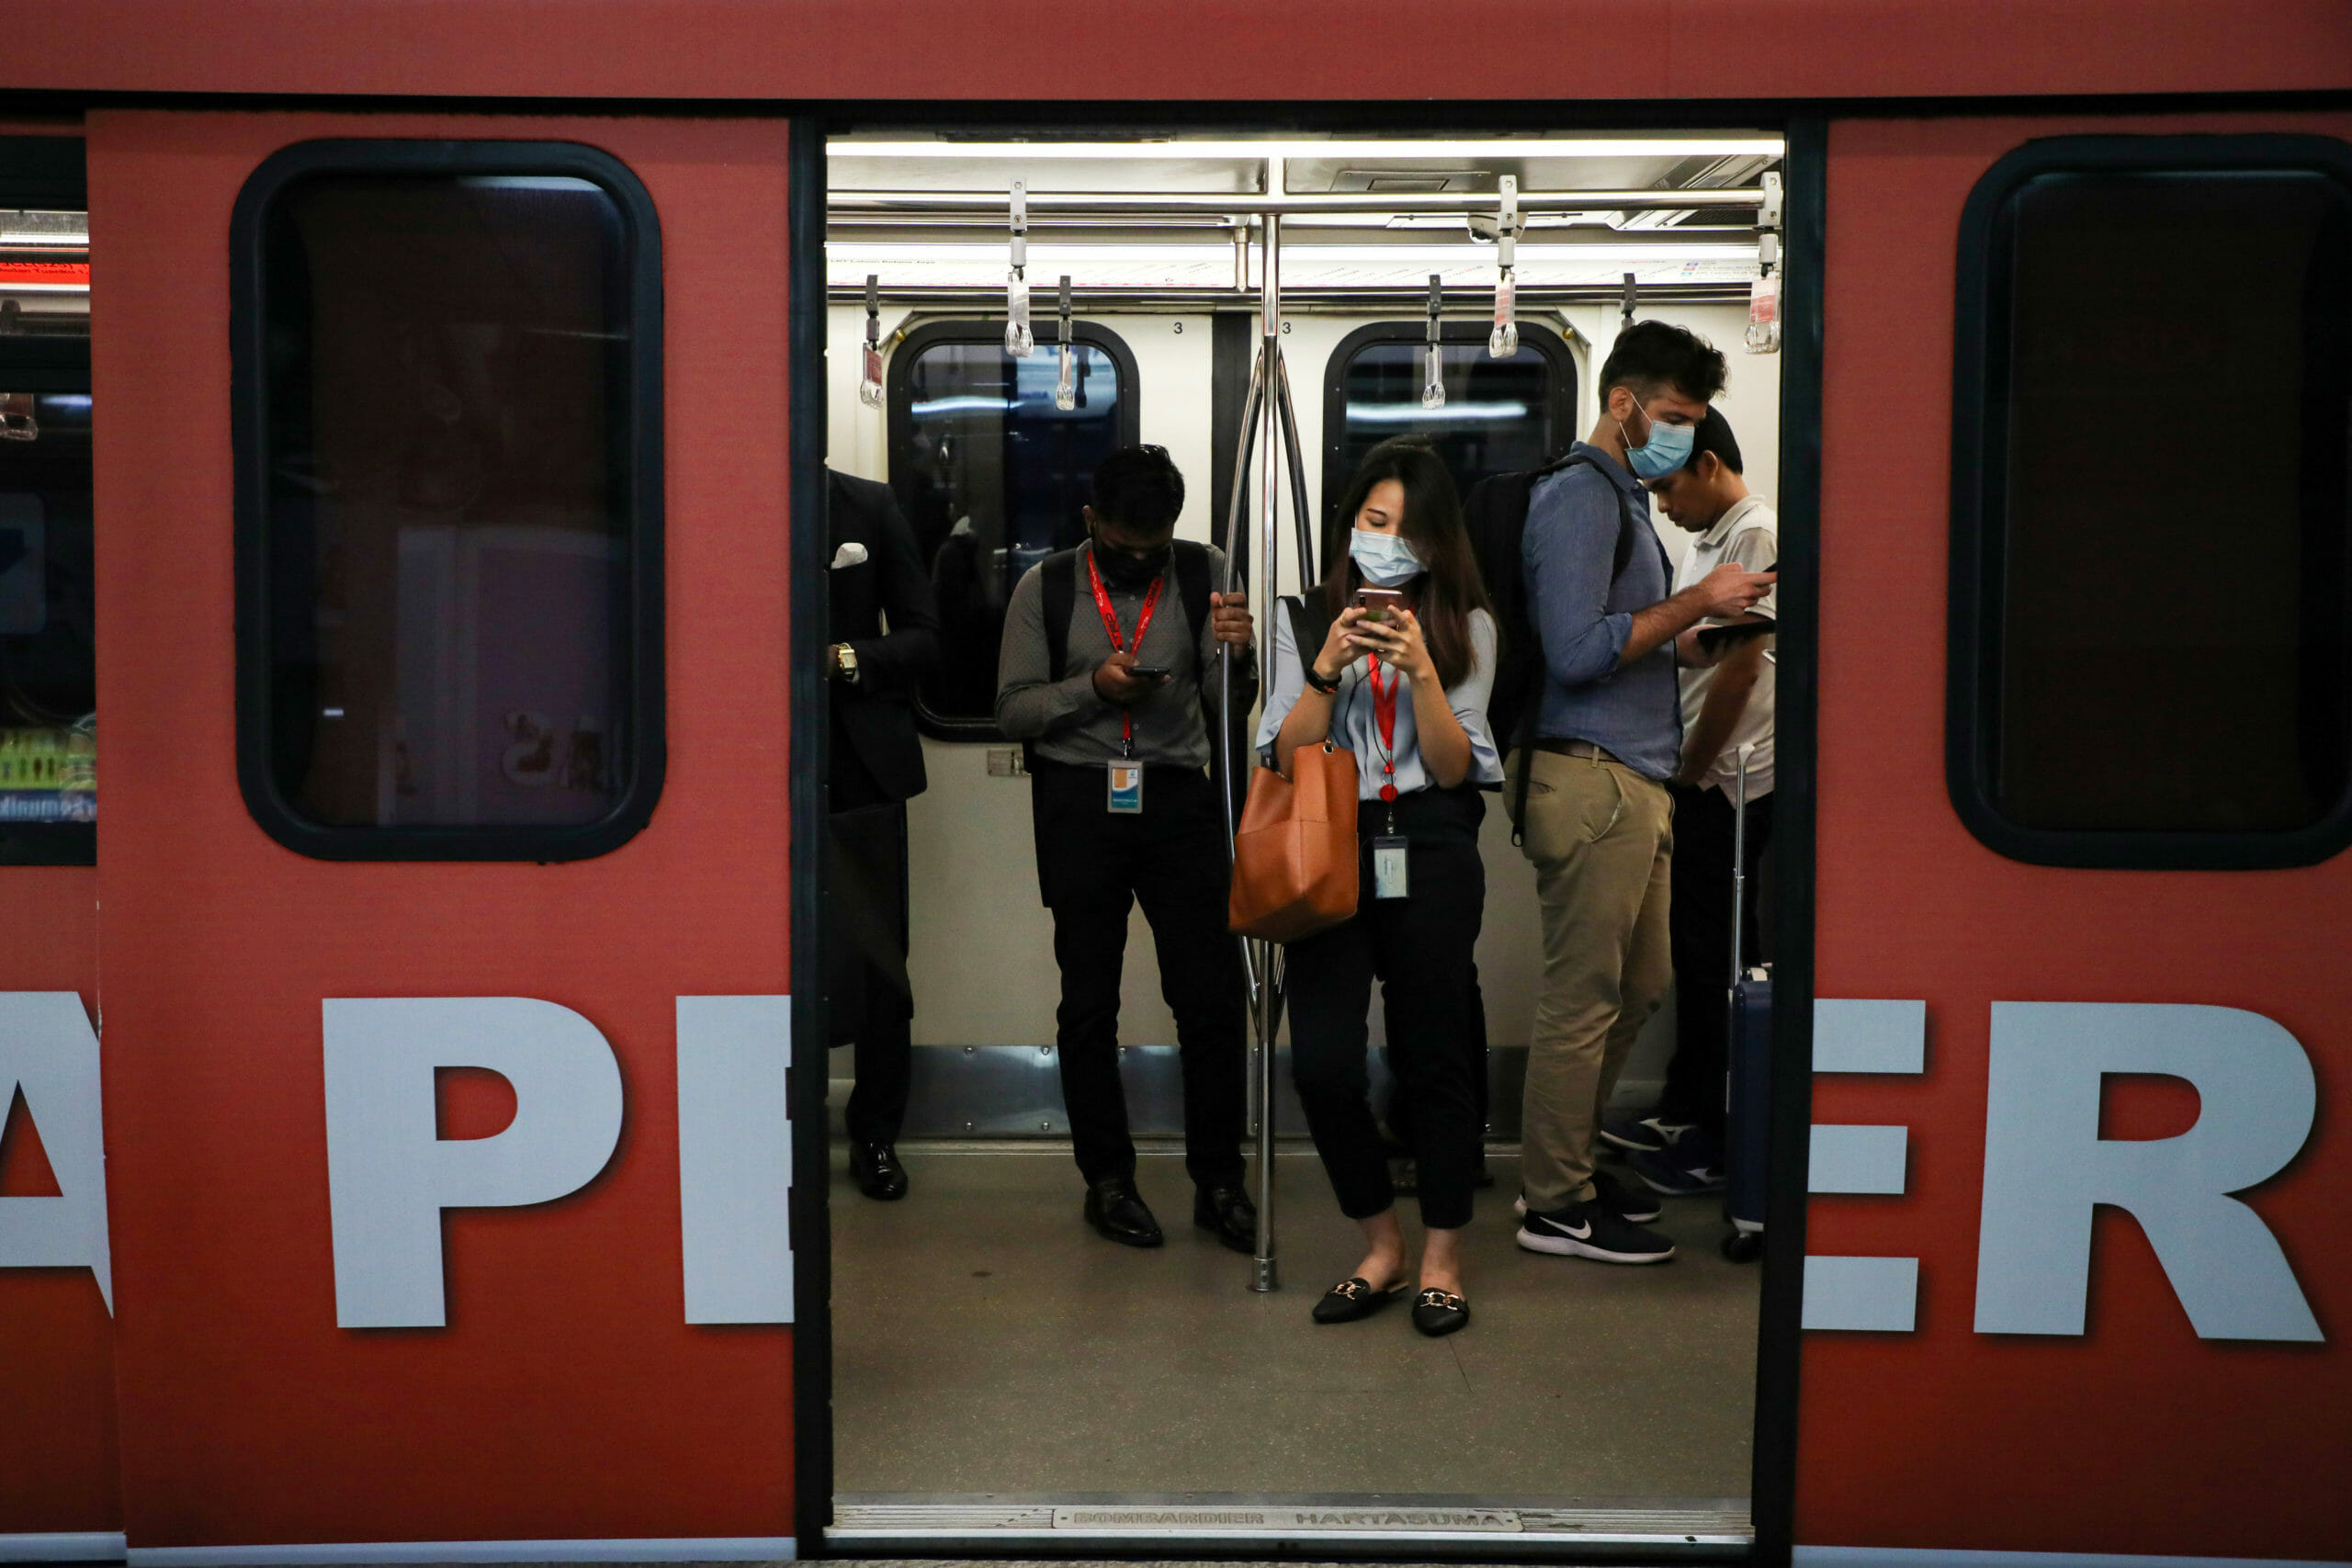 Κοροναϊός: Συνεχίζονται οι απολυμάνσεις στα λεωφορεία και το μετρό του Πεκίνου